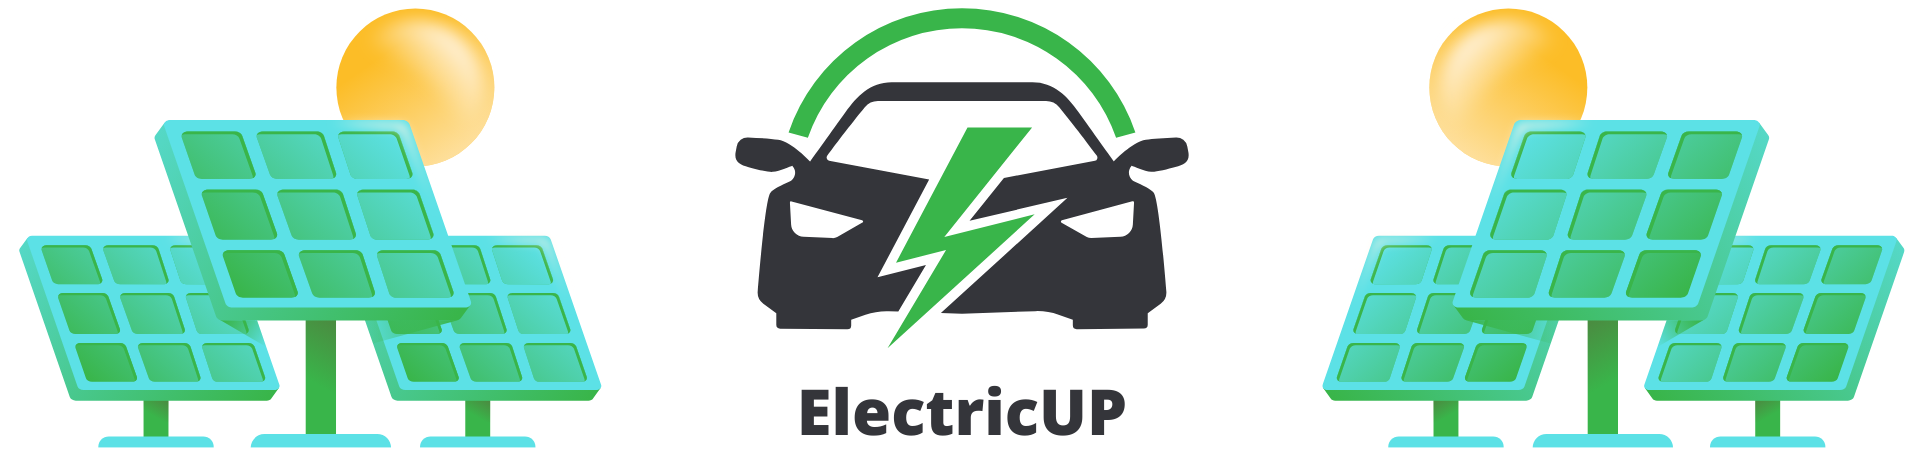 Transformă viitorul cu ElectricUP 2 și SEEI Technology